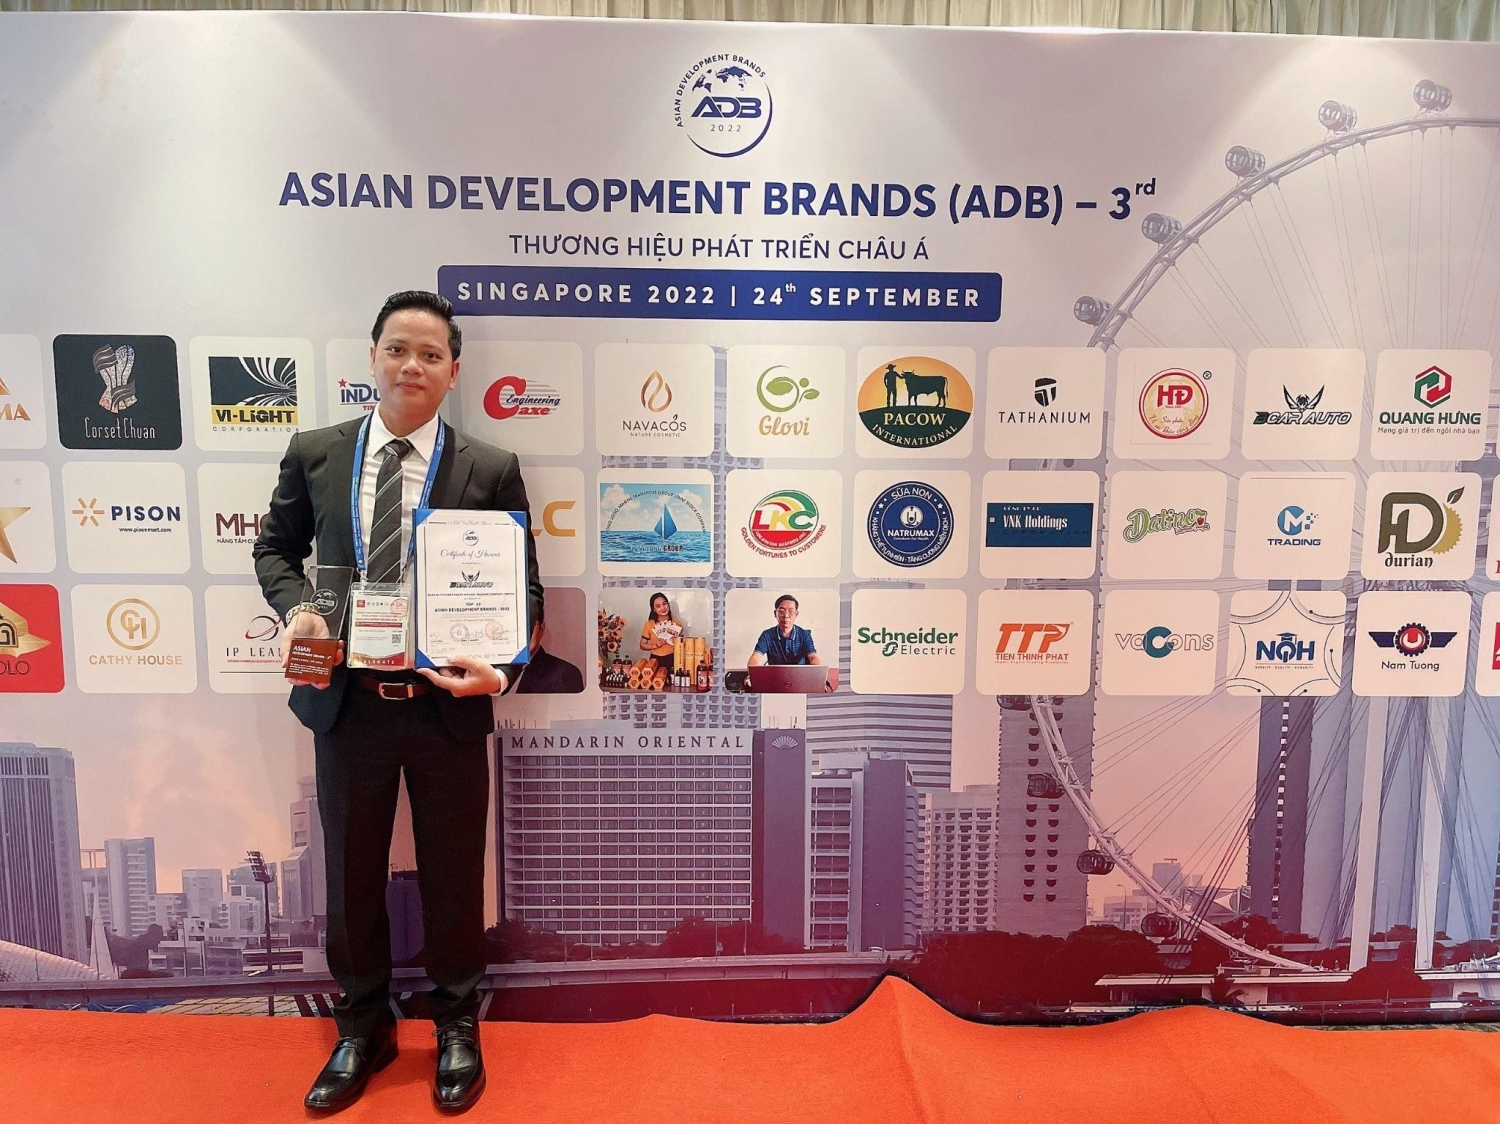 Bcar Auto Lọt Top 10 Thương hiệu phát triển Châu Á - Asian Development Brands